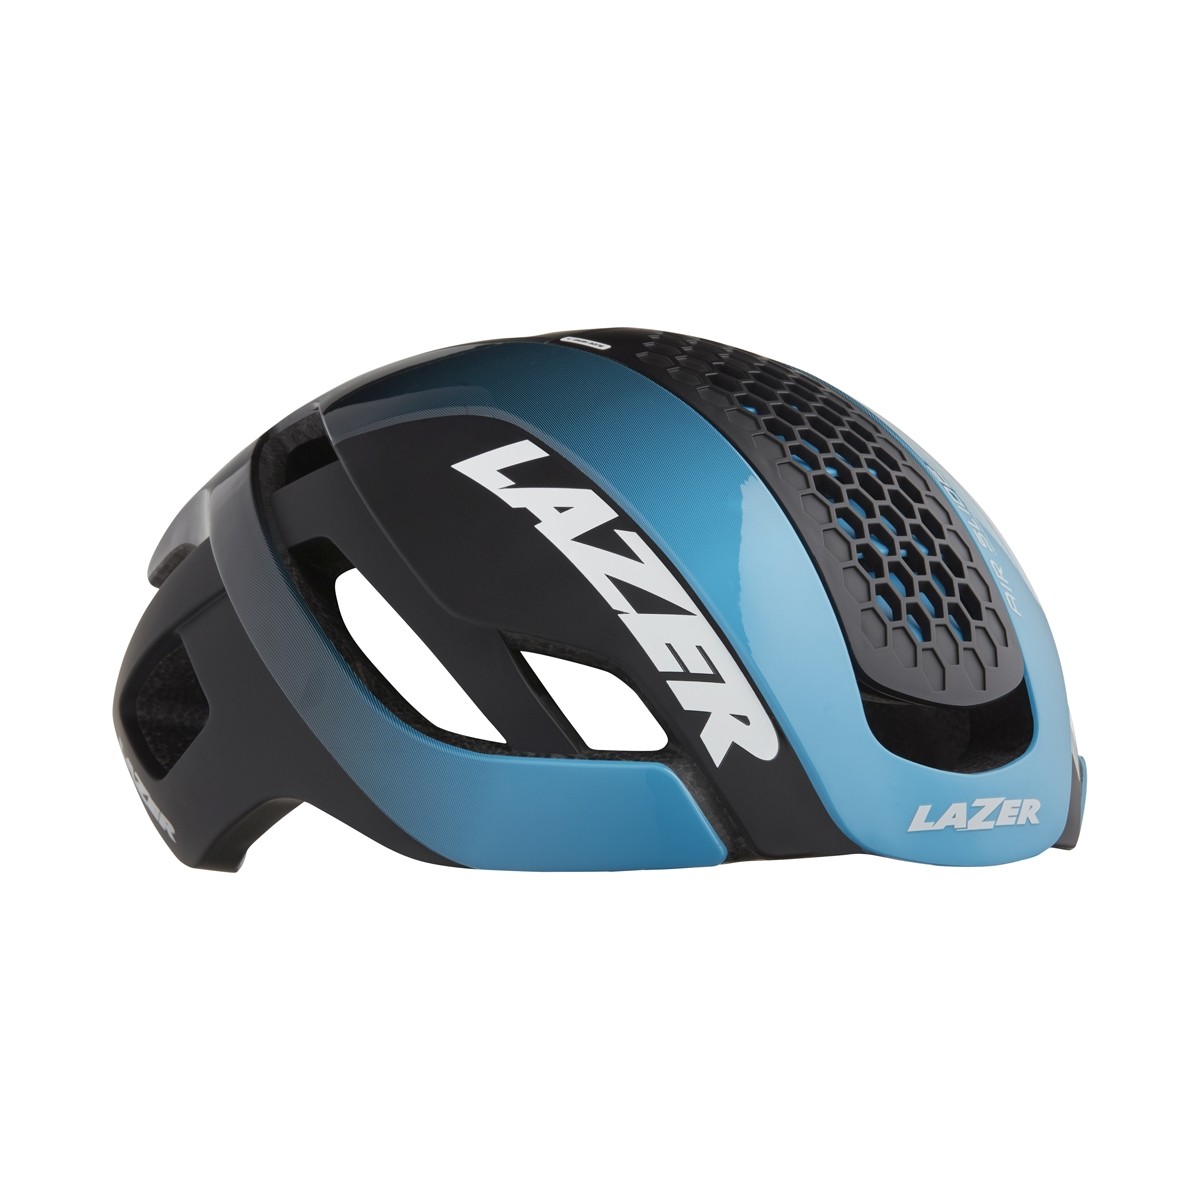 Lazer bullet 2.0 casque de cyclisme bleu noir (y compris lentille + led)